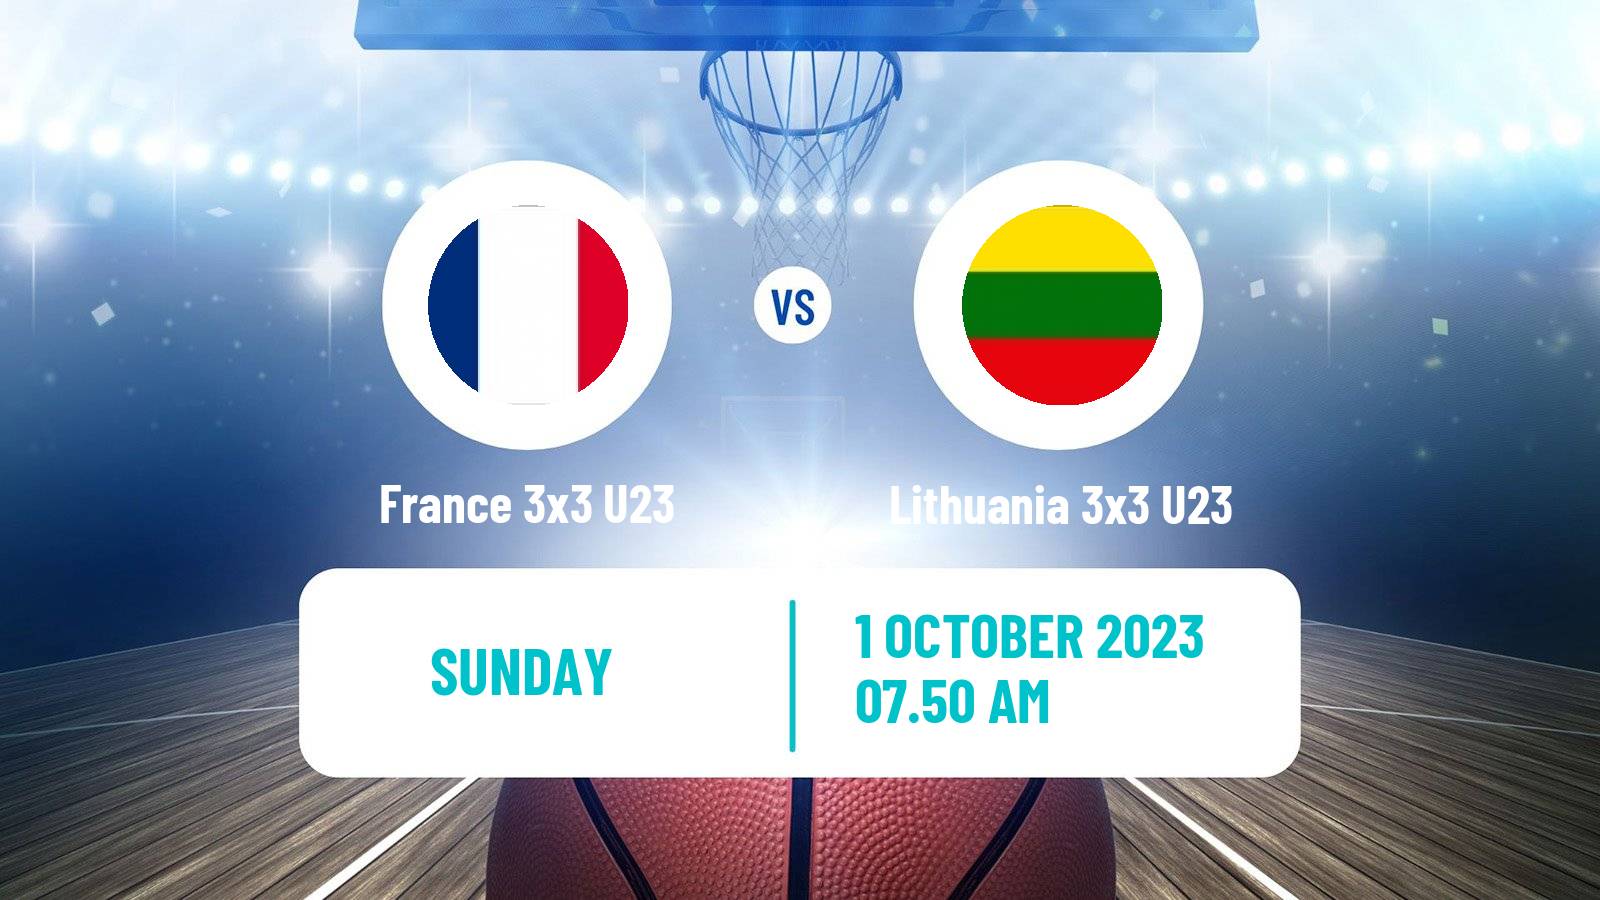 Basketball World Cup Basketball 3x3 U23 France 3x3 U23 - Lithuania 3x3 U23